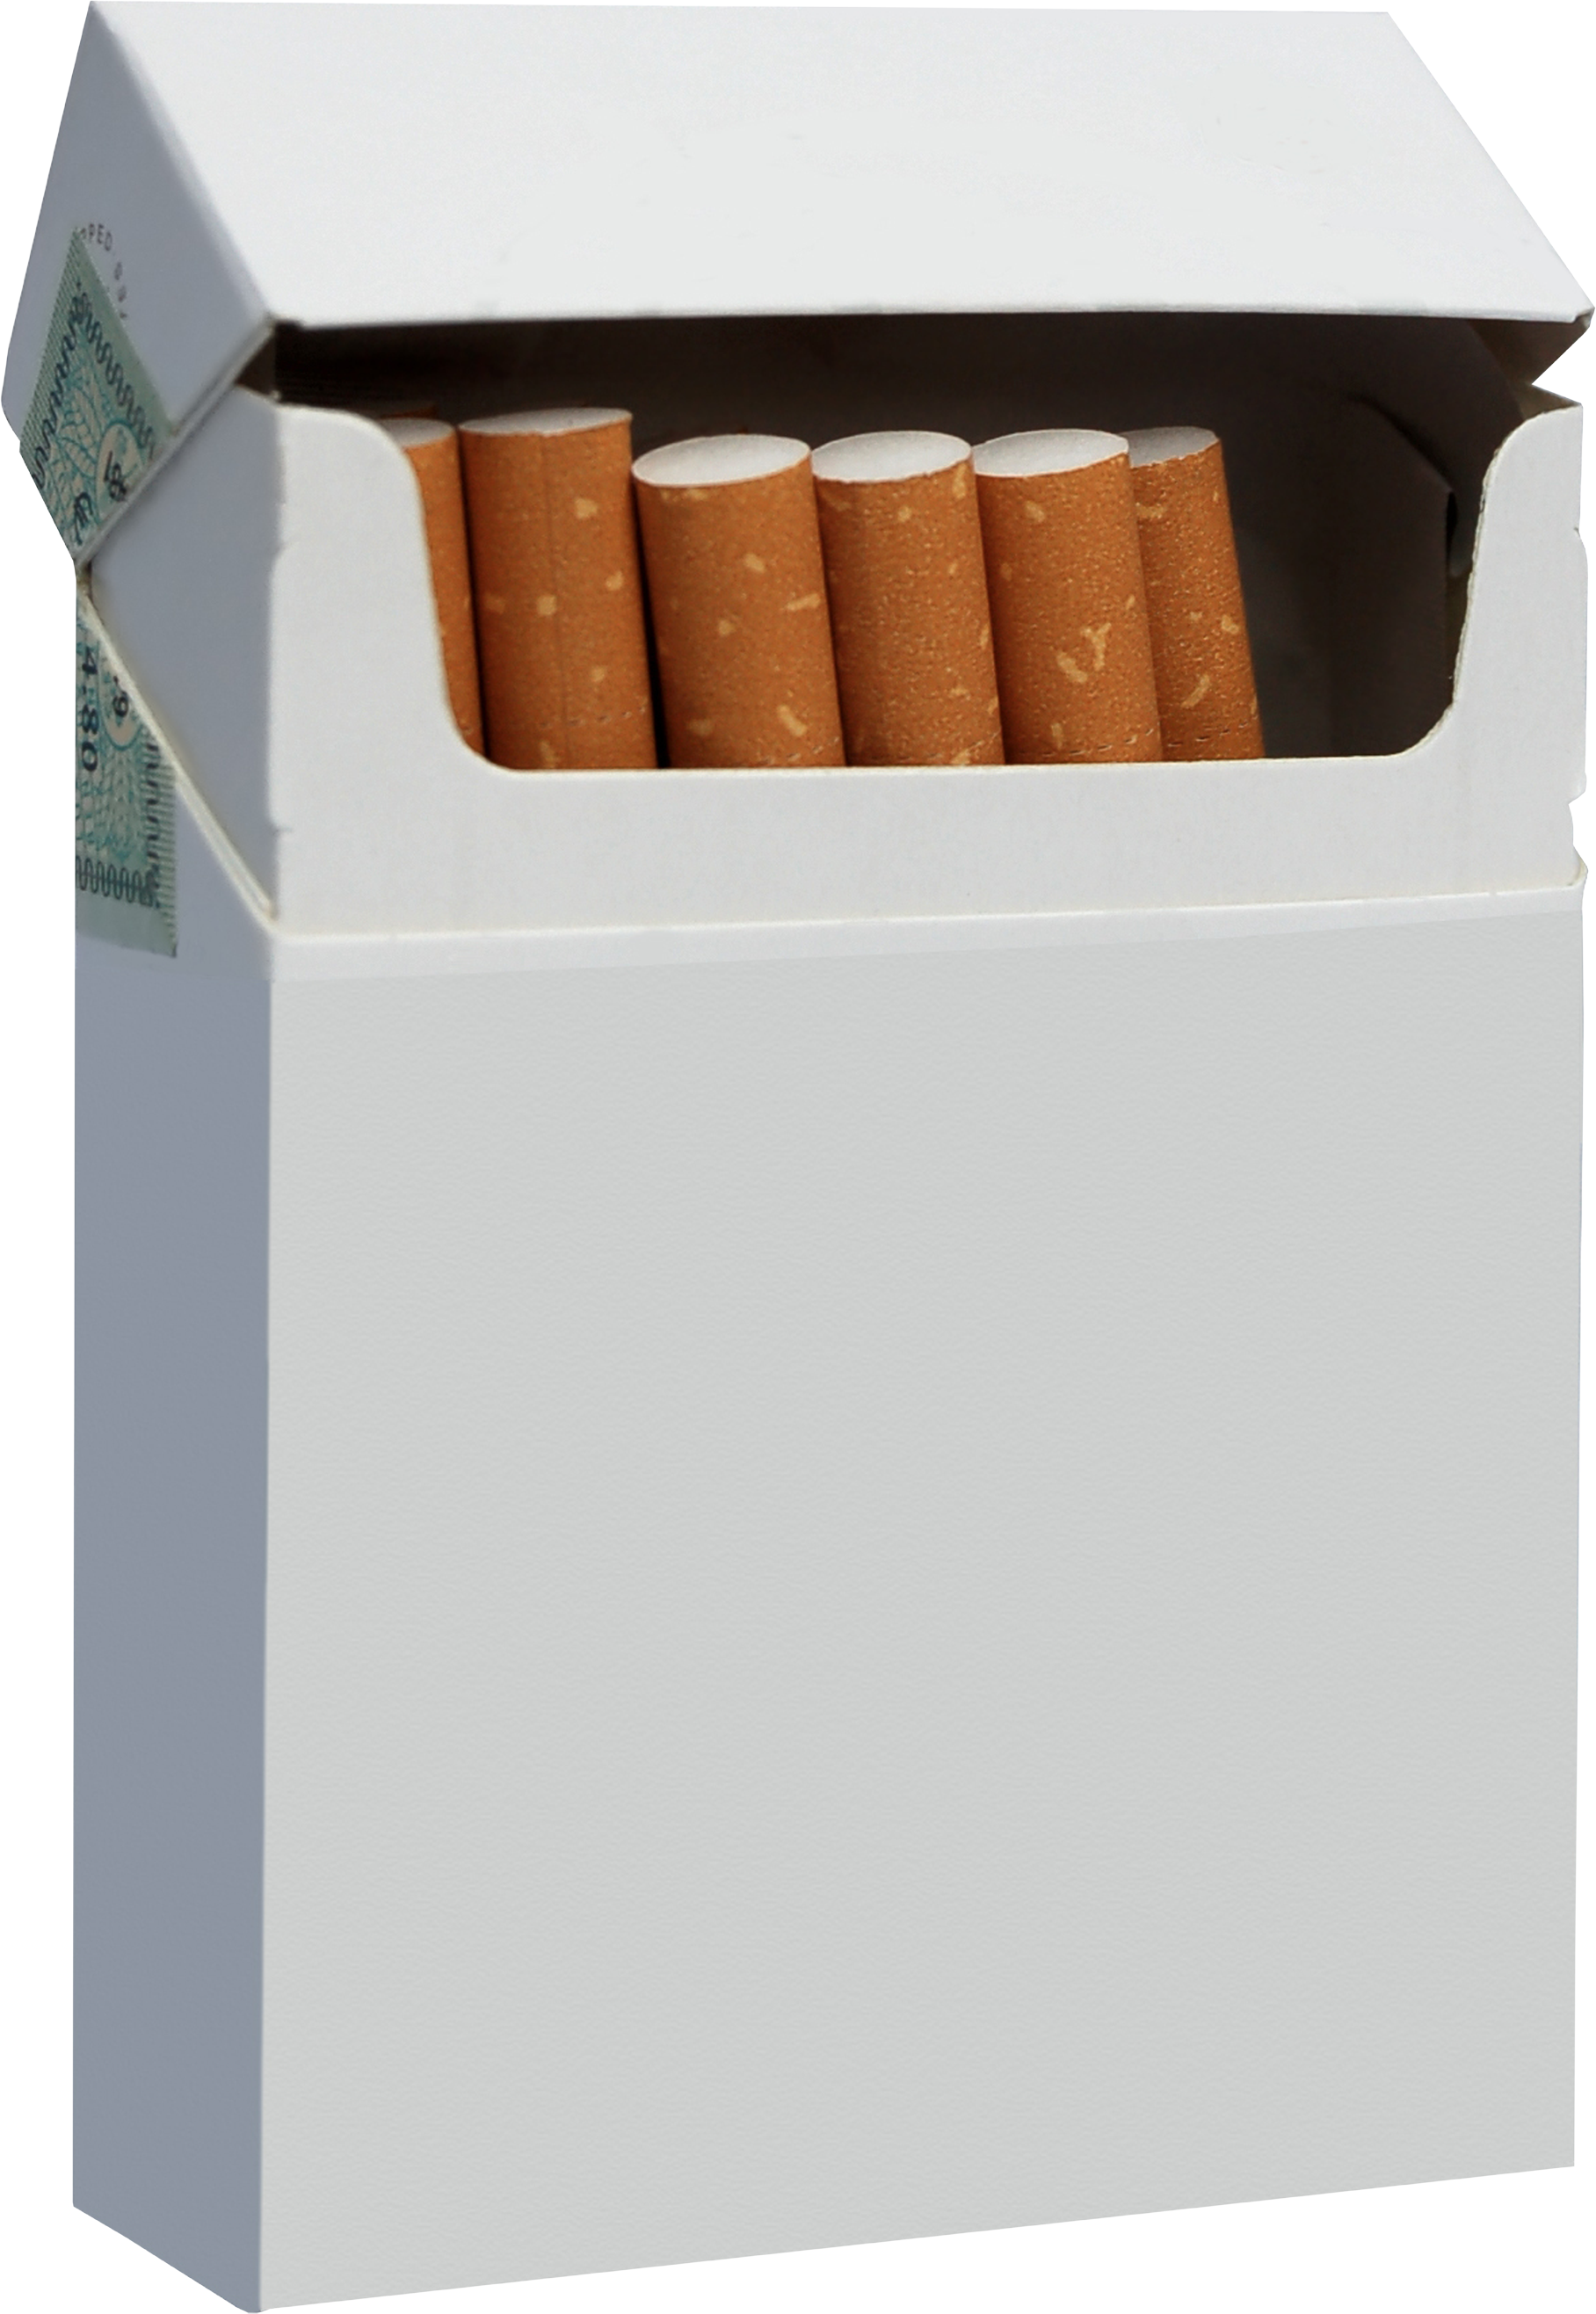 Um maço de cigarros